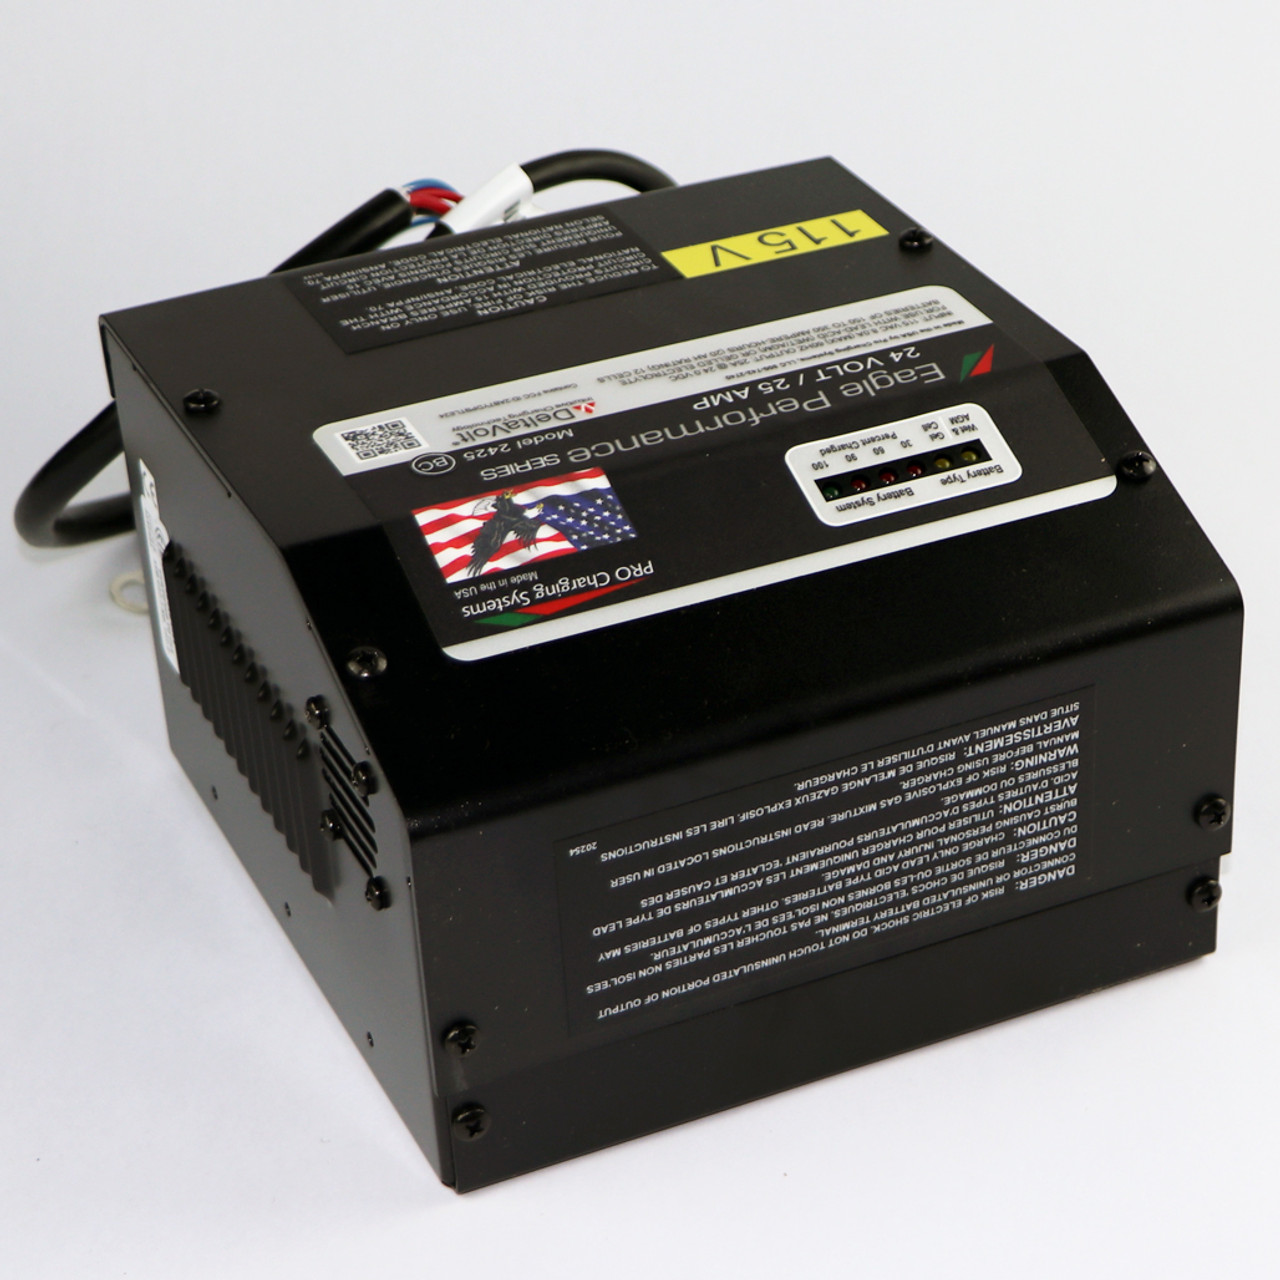 Battery Charger, 24V, 25A (2699851) - NSS Enterprises